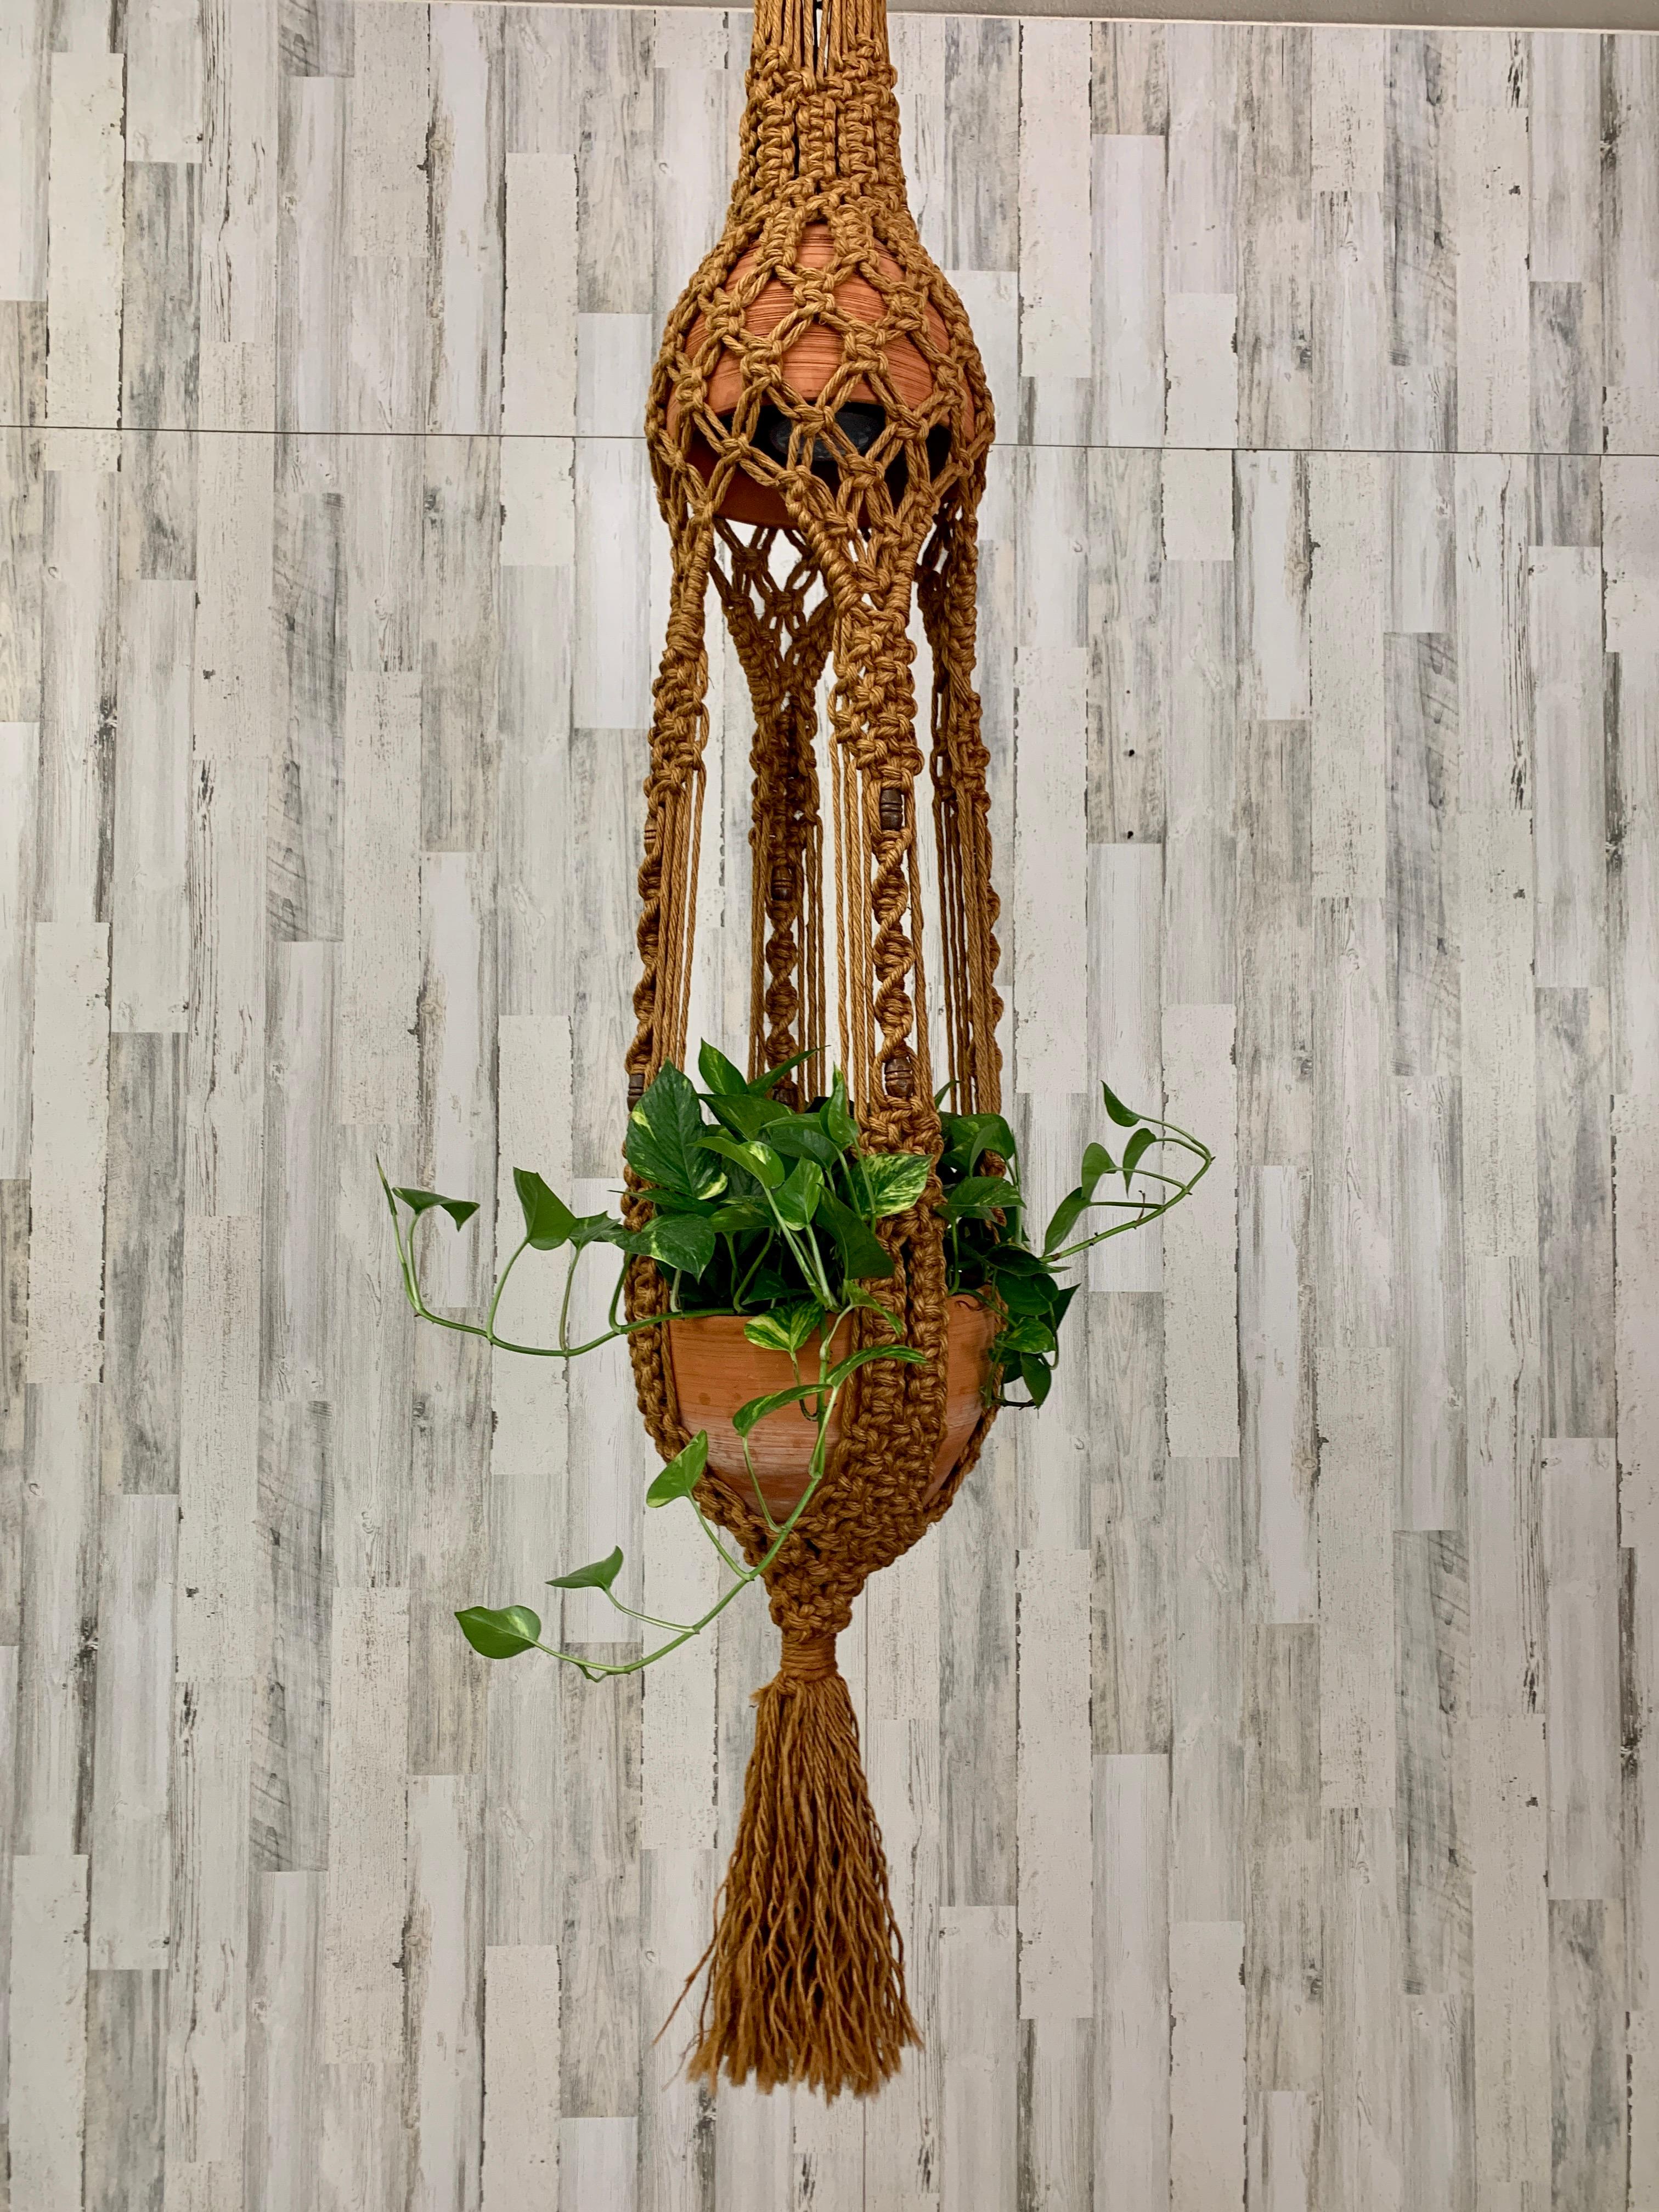 Lampe vintage surdimensionnée à design complexe, tissée à la main en jute avec des perles de bois, suspendue en macramé. Cette sculpture comporte des poteries en terre cuite opposées : une pour l'abat-jour et une pour la plante.